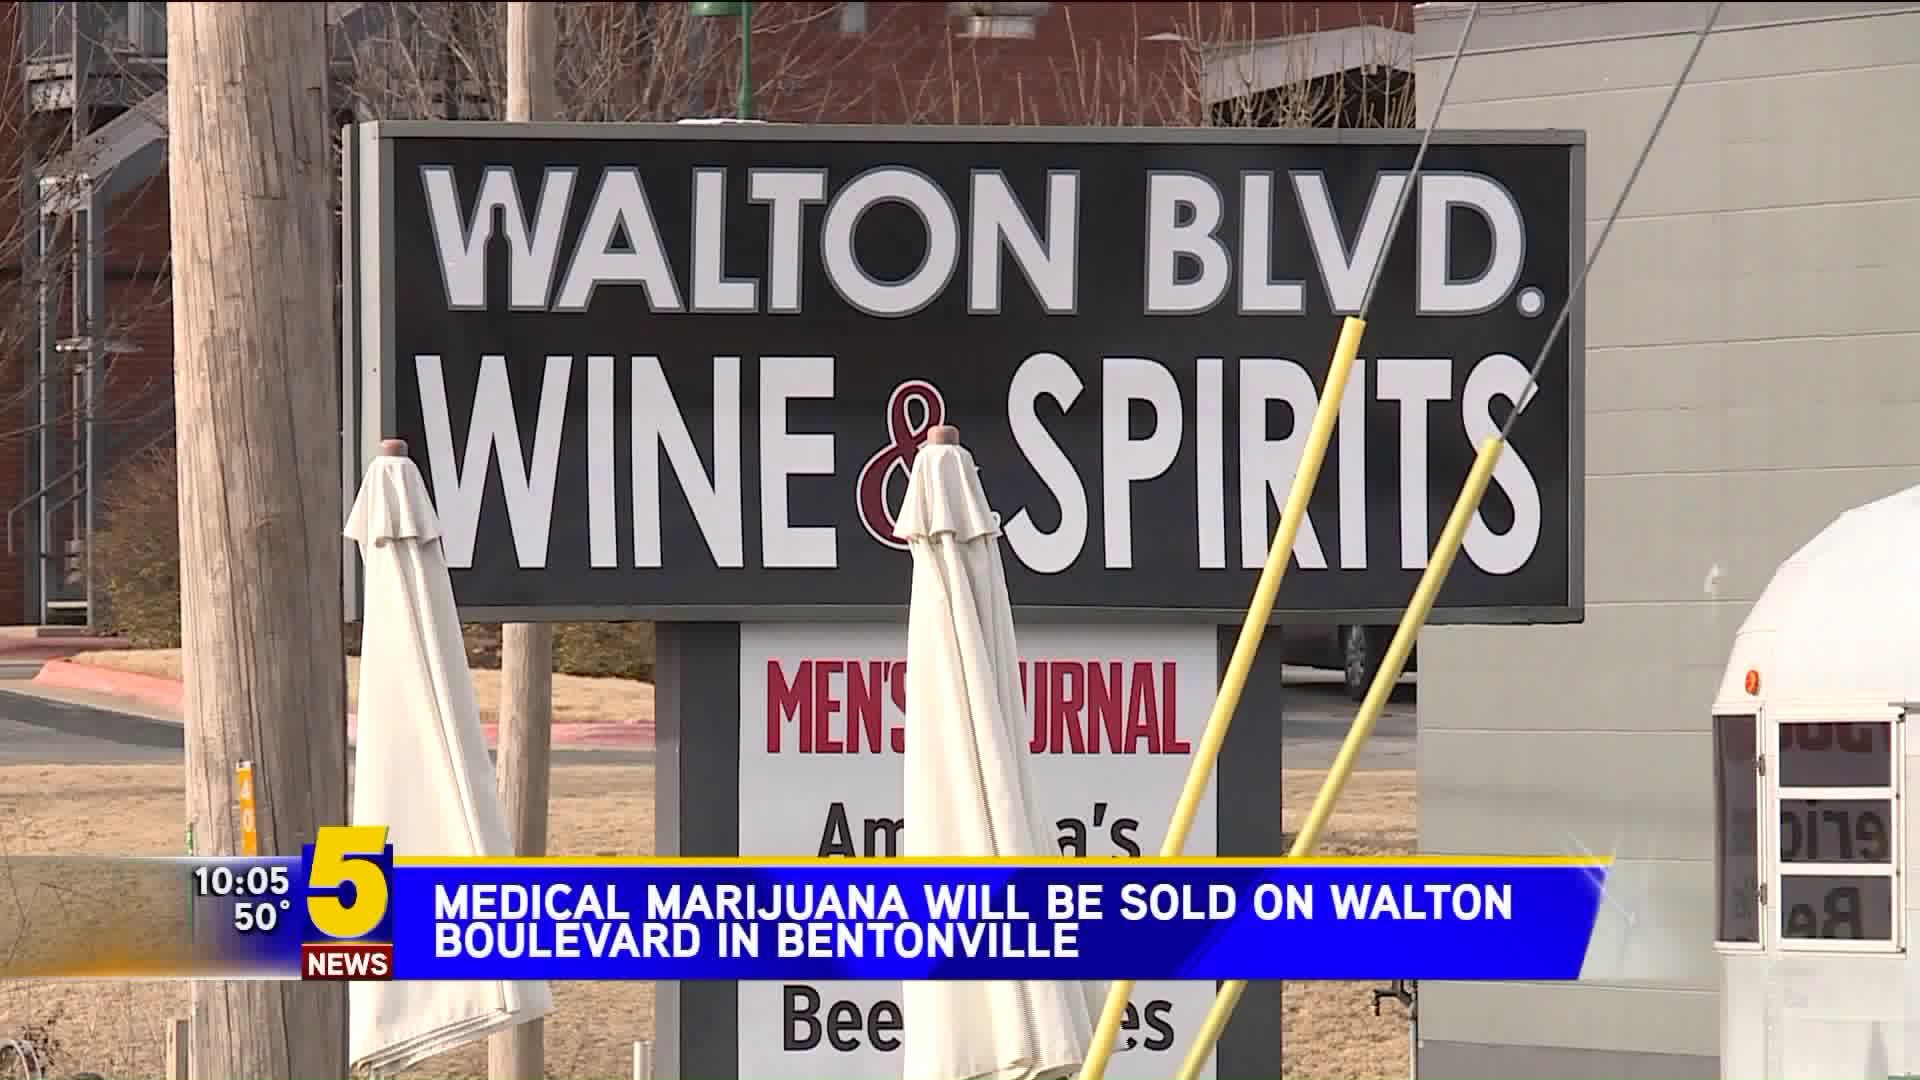 Medical Marijuana Will Be Sold On Walton Blvd. In Bentonville